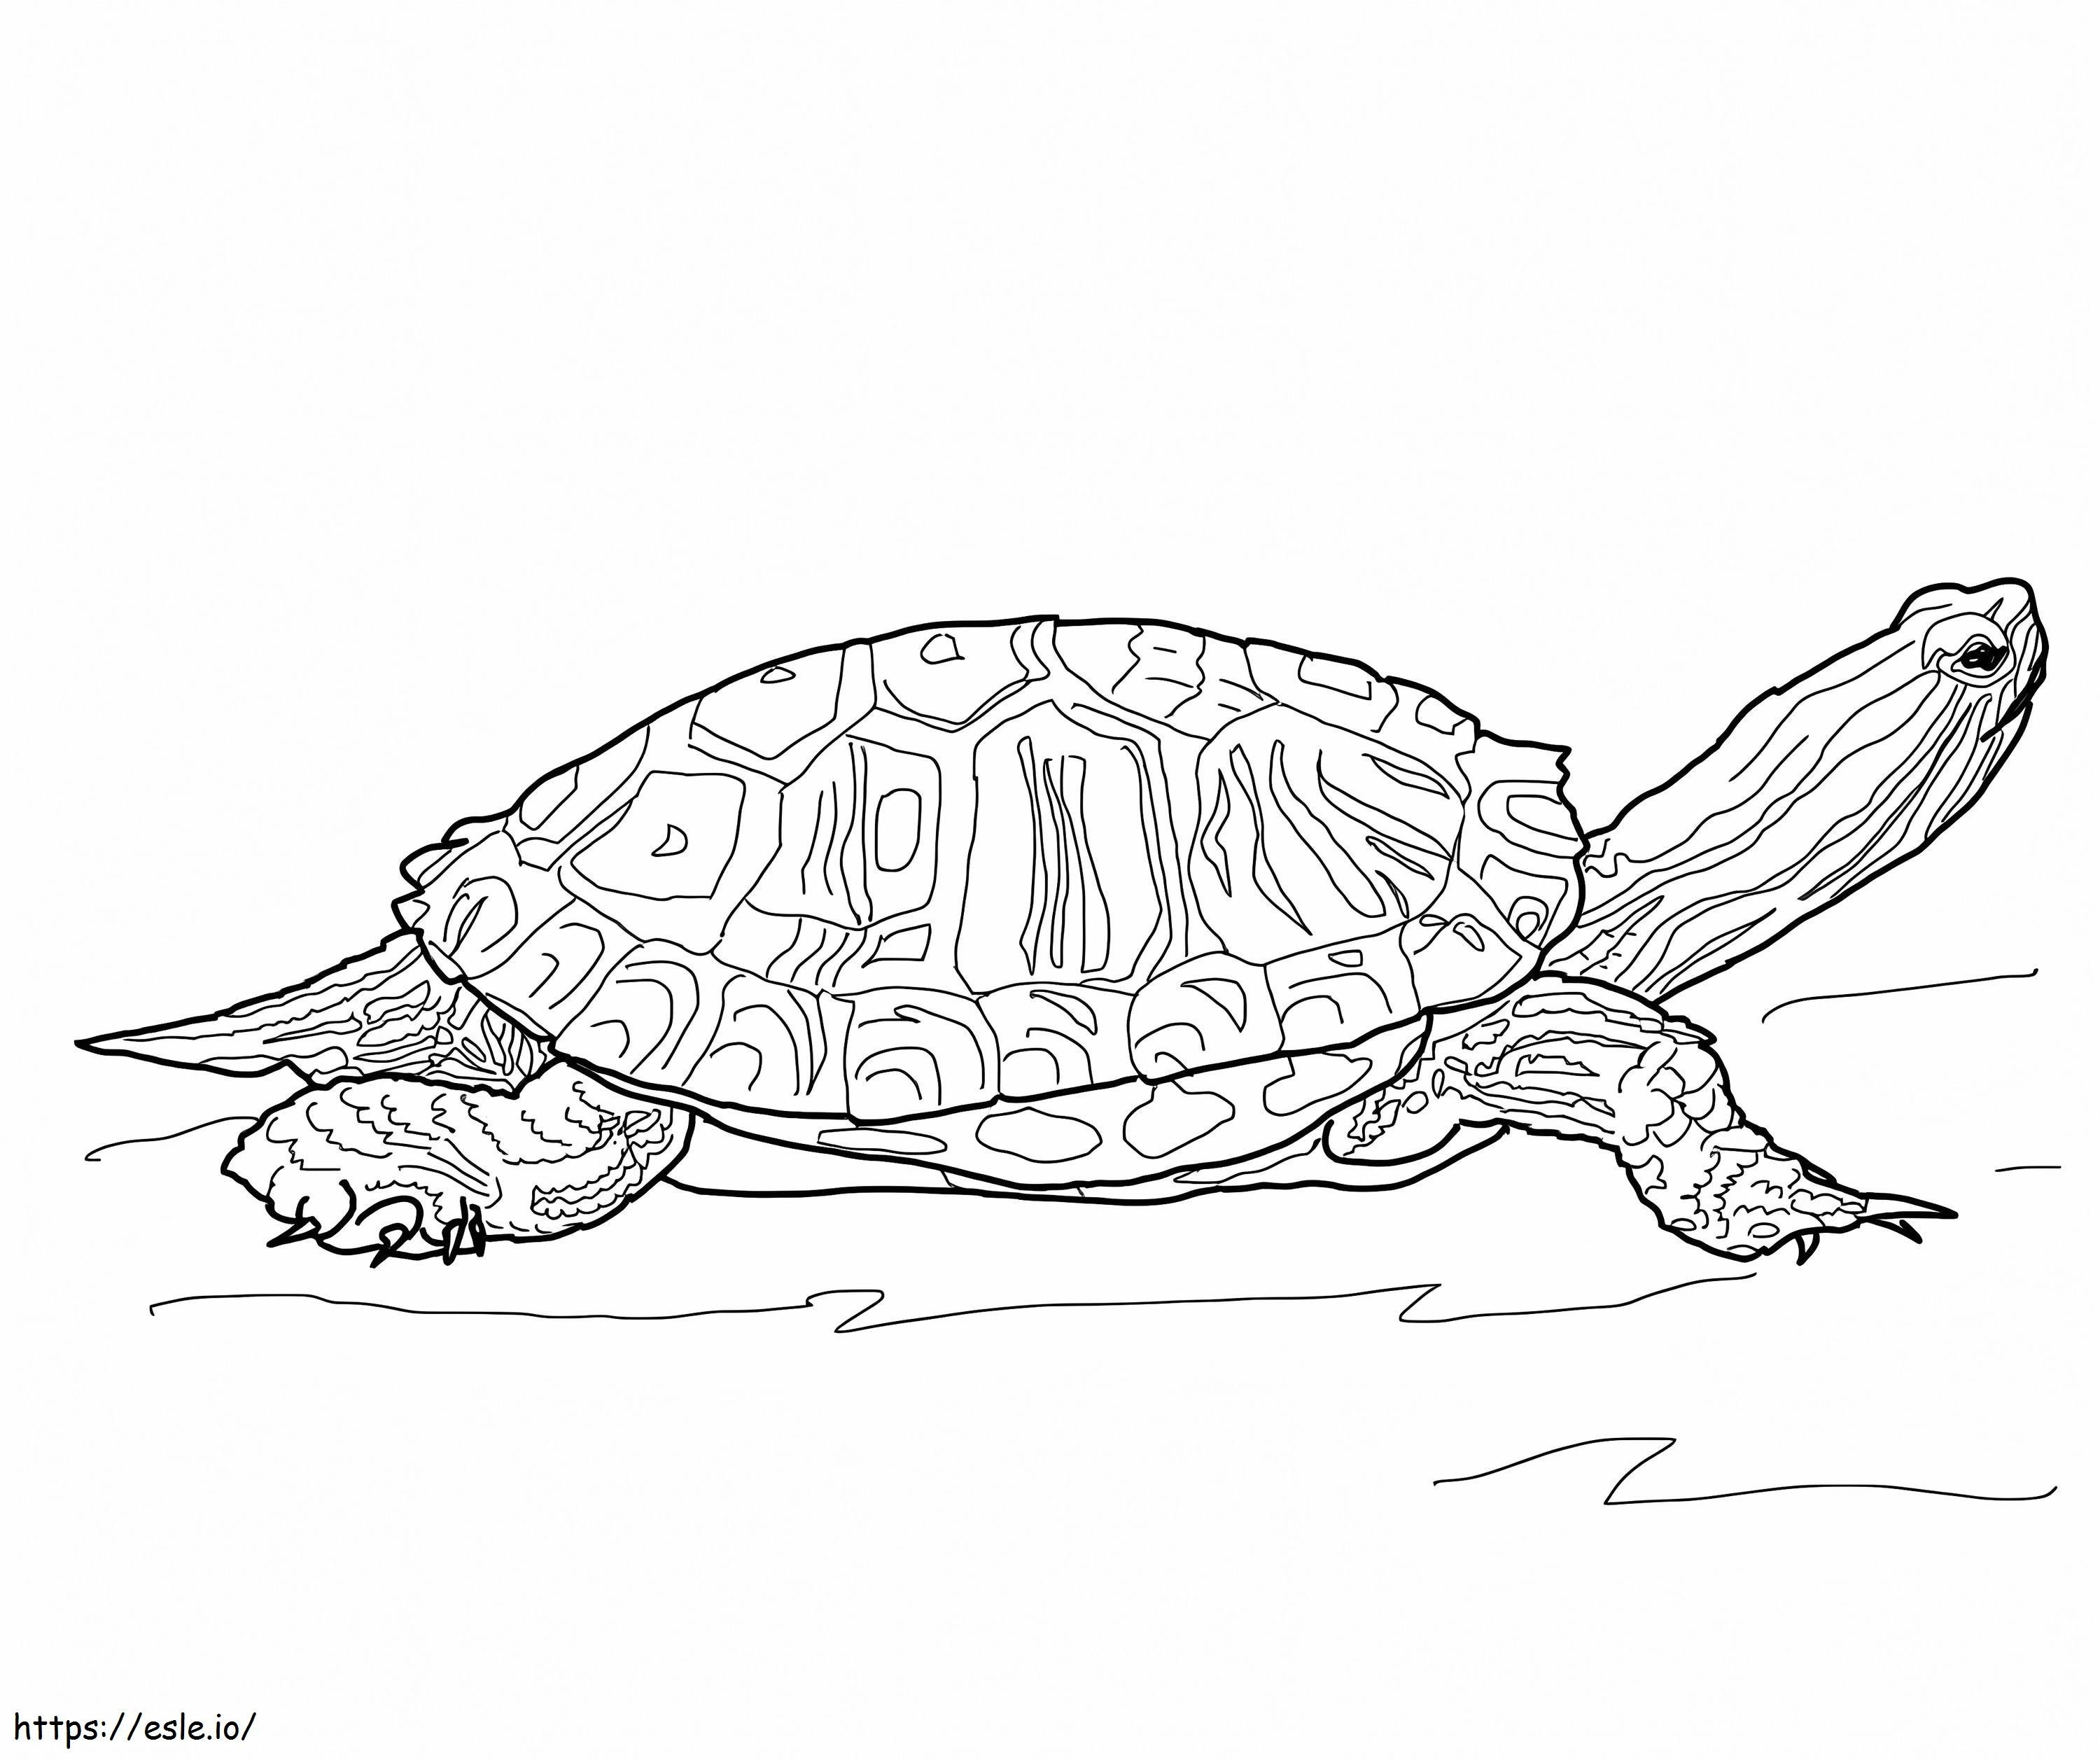 Rotohr-Schmuckschildkröte ausmalbilder